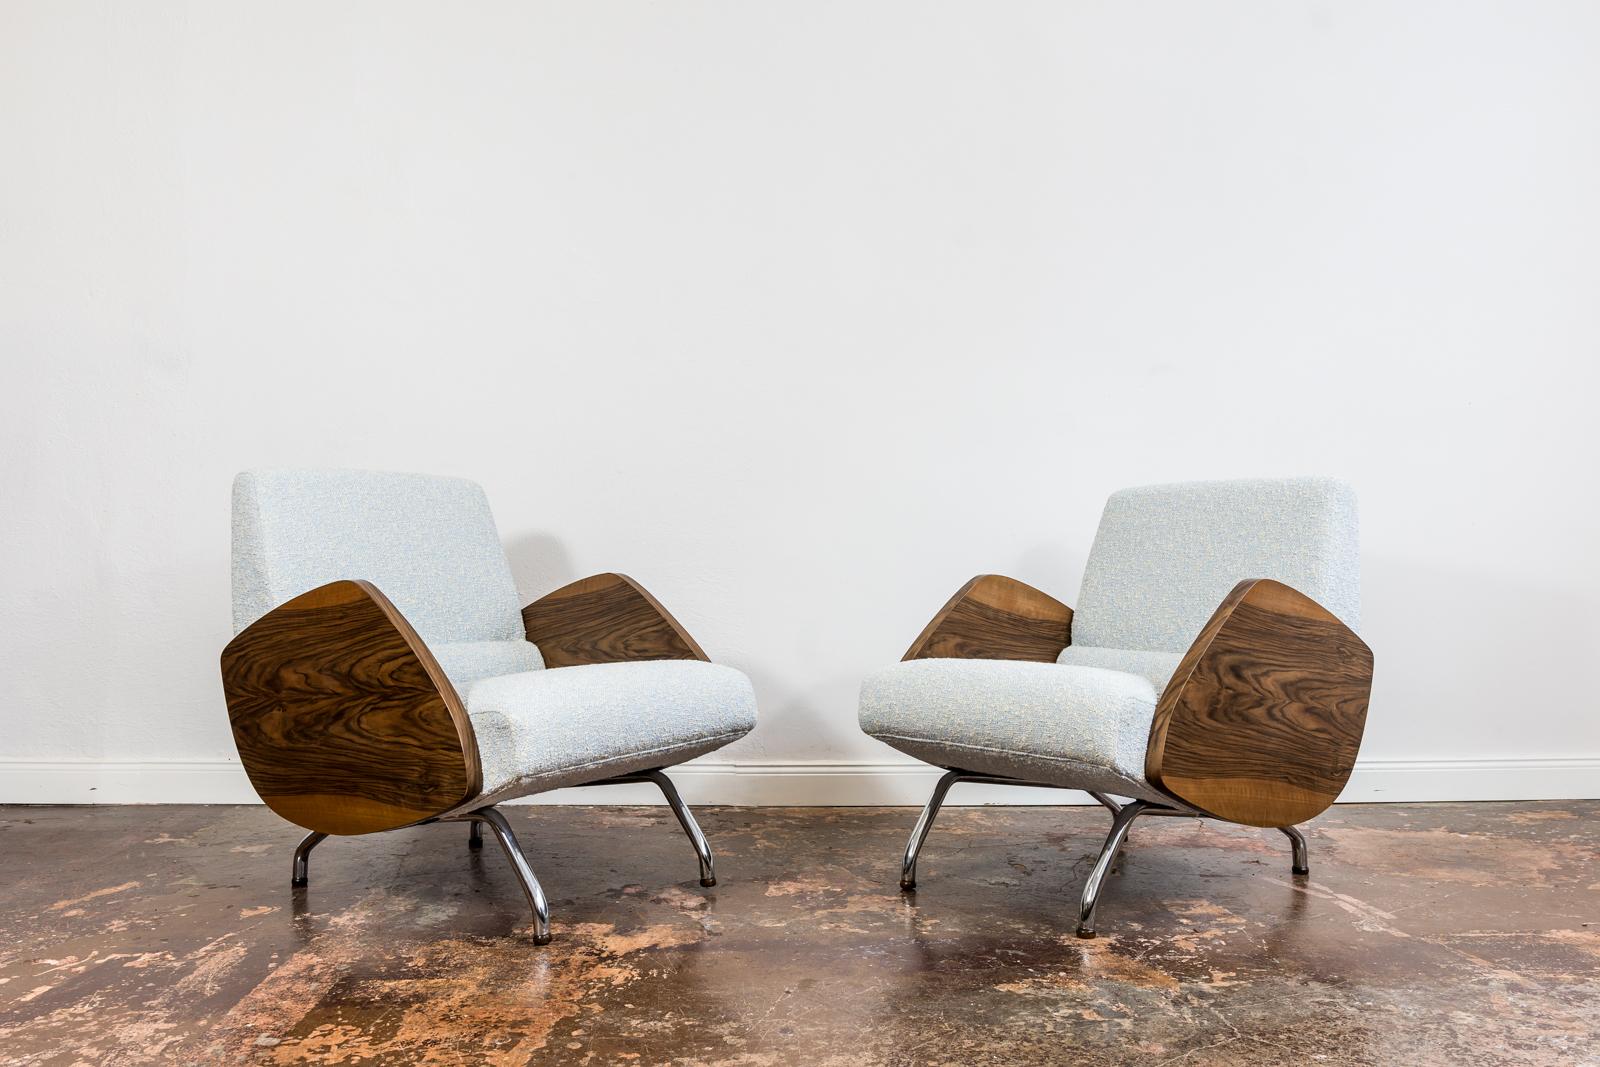 Paire de chaises longues du milieu du siècle, modèle 360, conçues par Janusz Rózanski dans les années 1950, fabriquées en Pologne dans les années 1960.

Ce modèle appartient au groupe des icônes du design polonais, il est très reconnu mais aussi